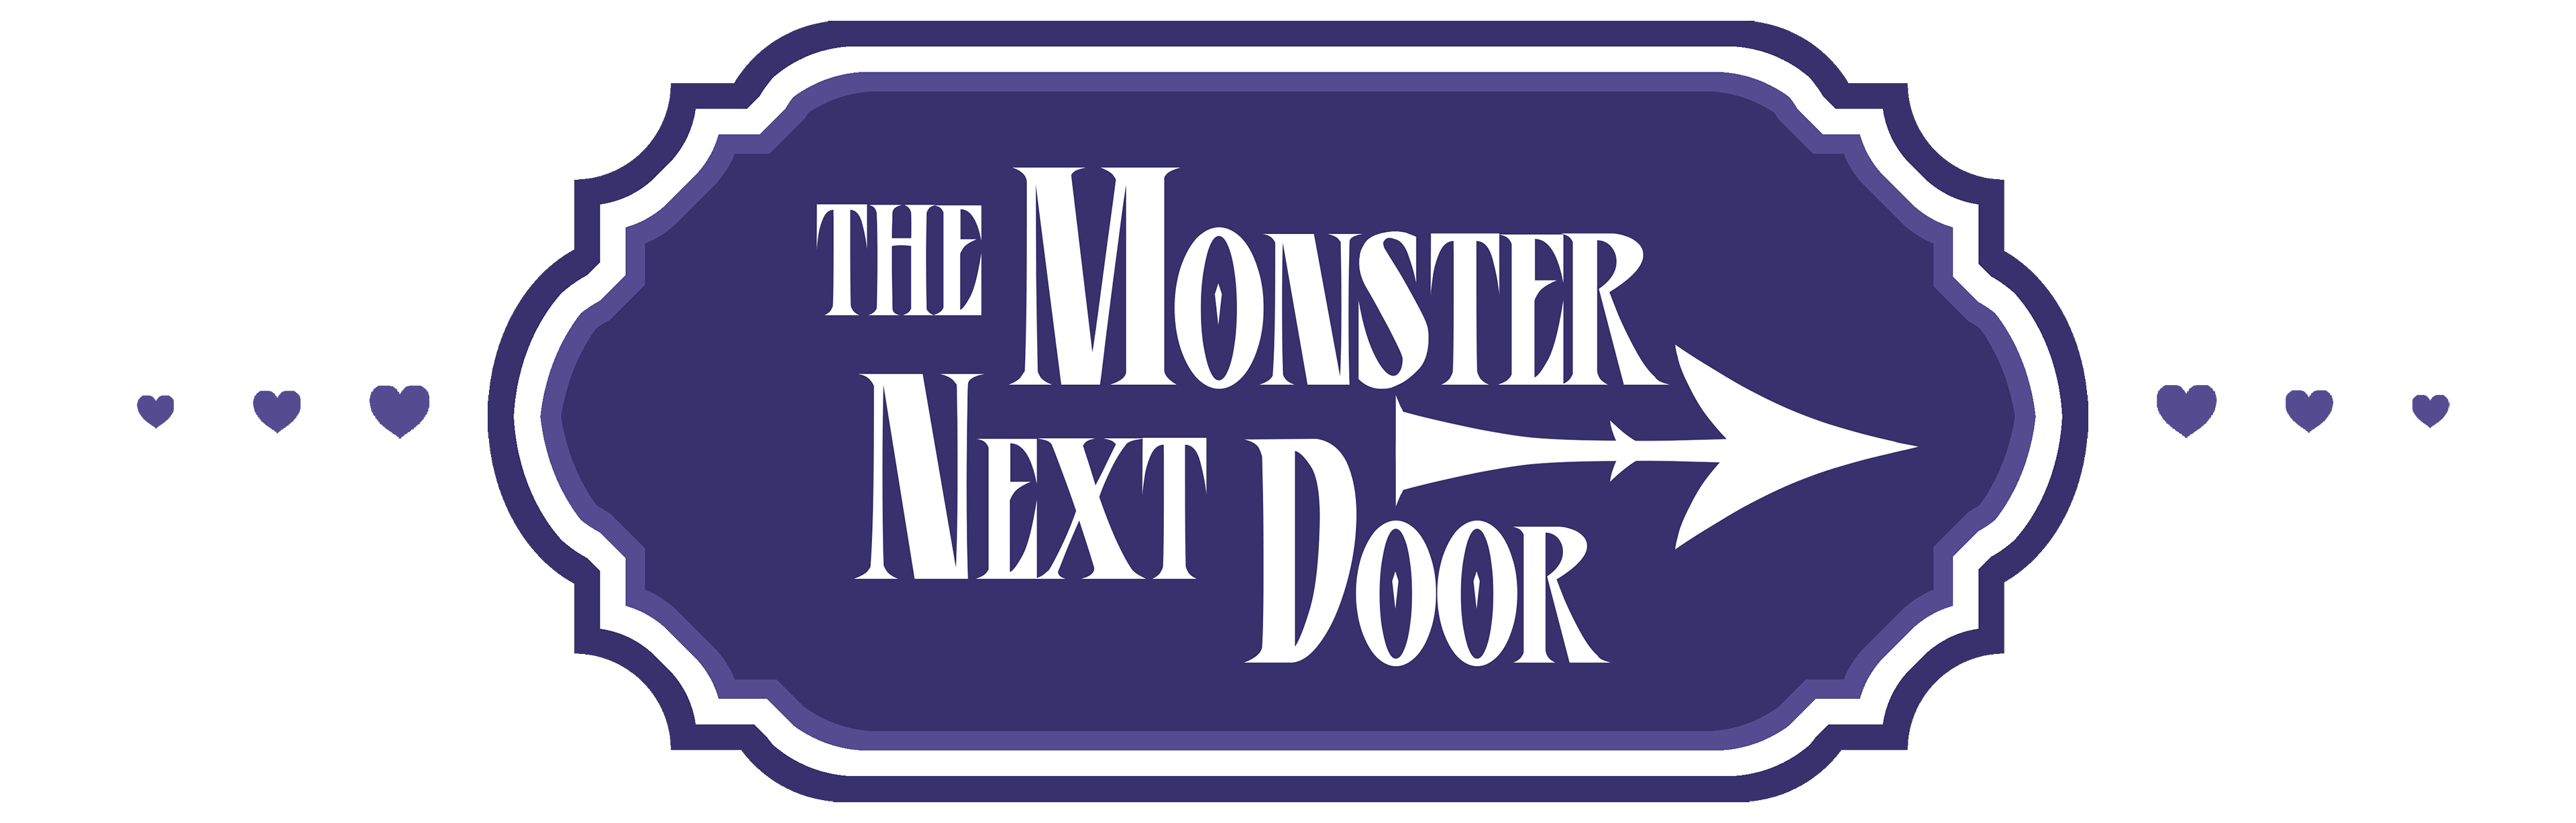 The Monster Next Door